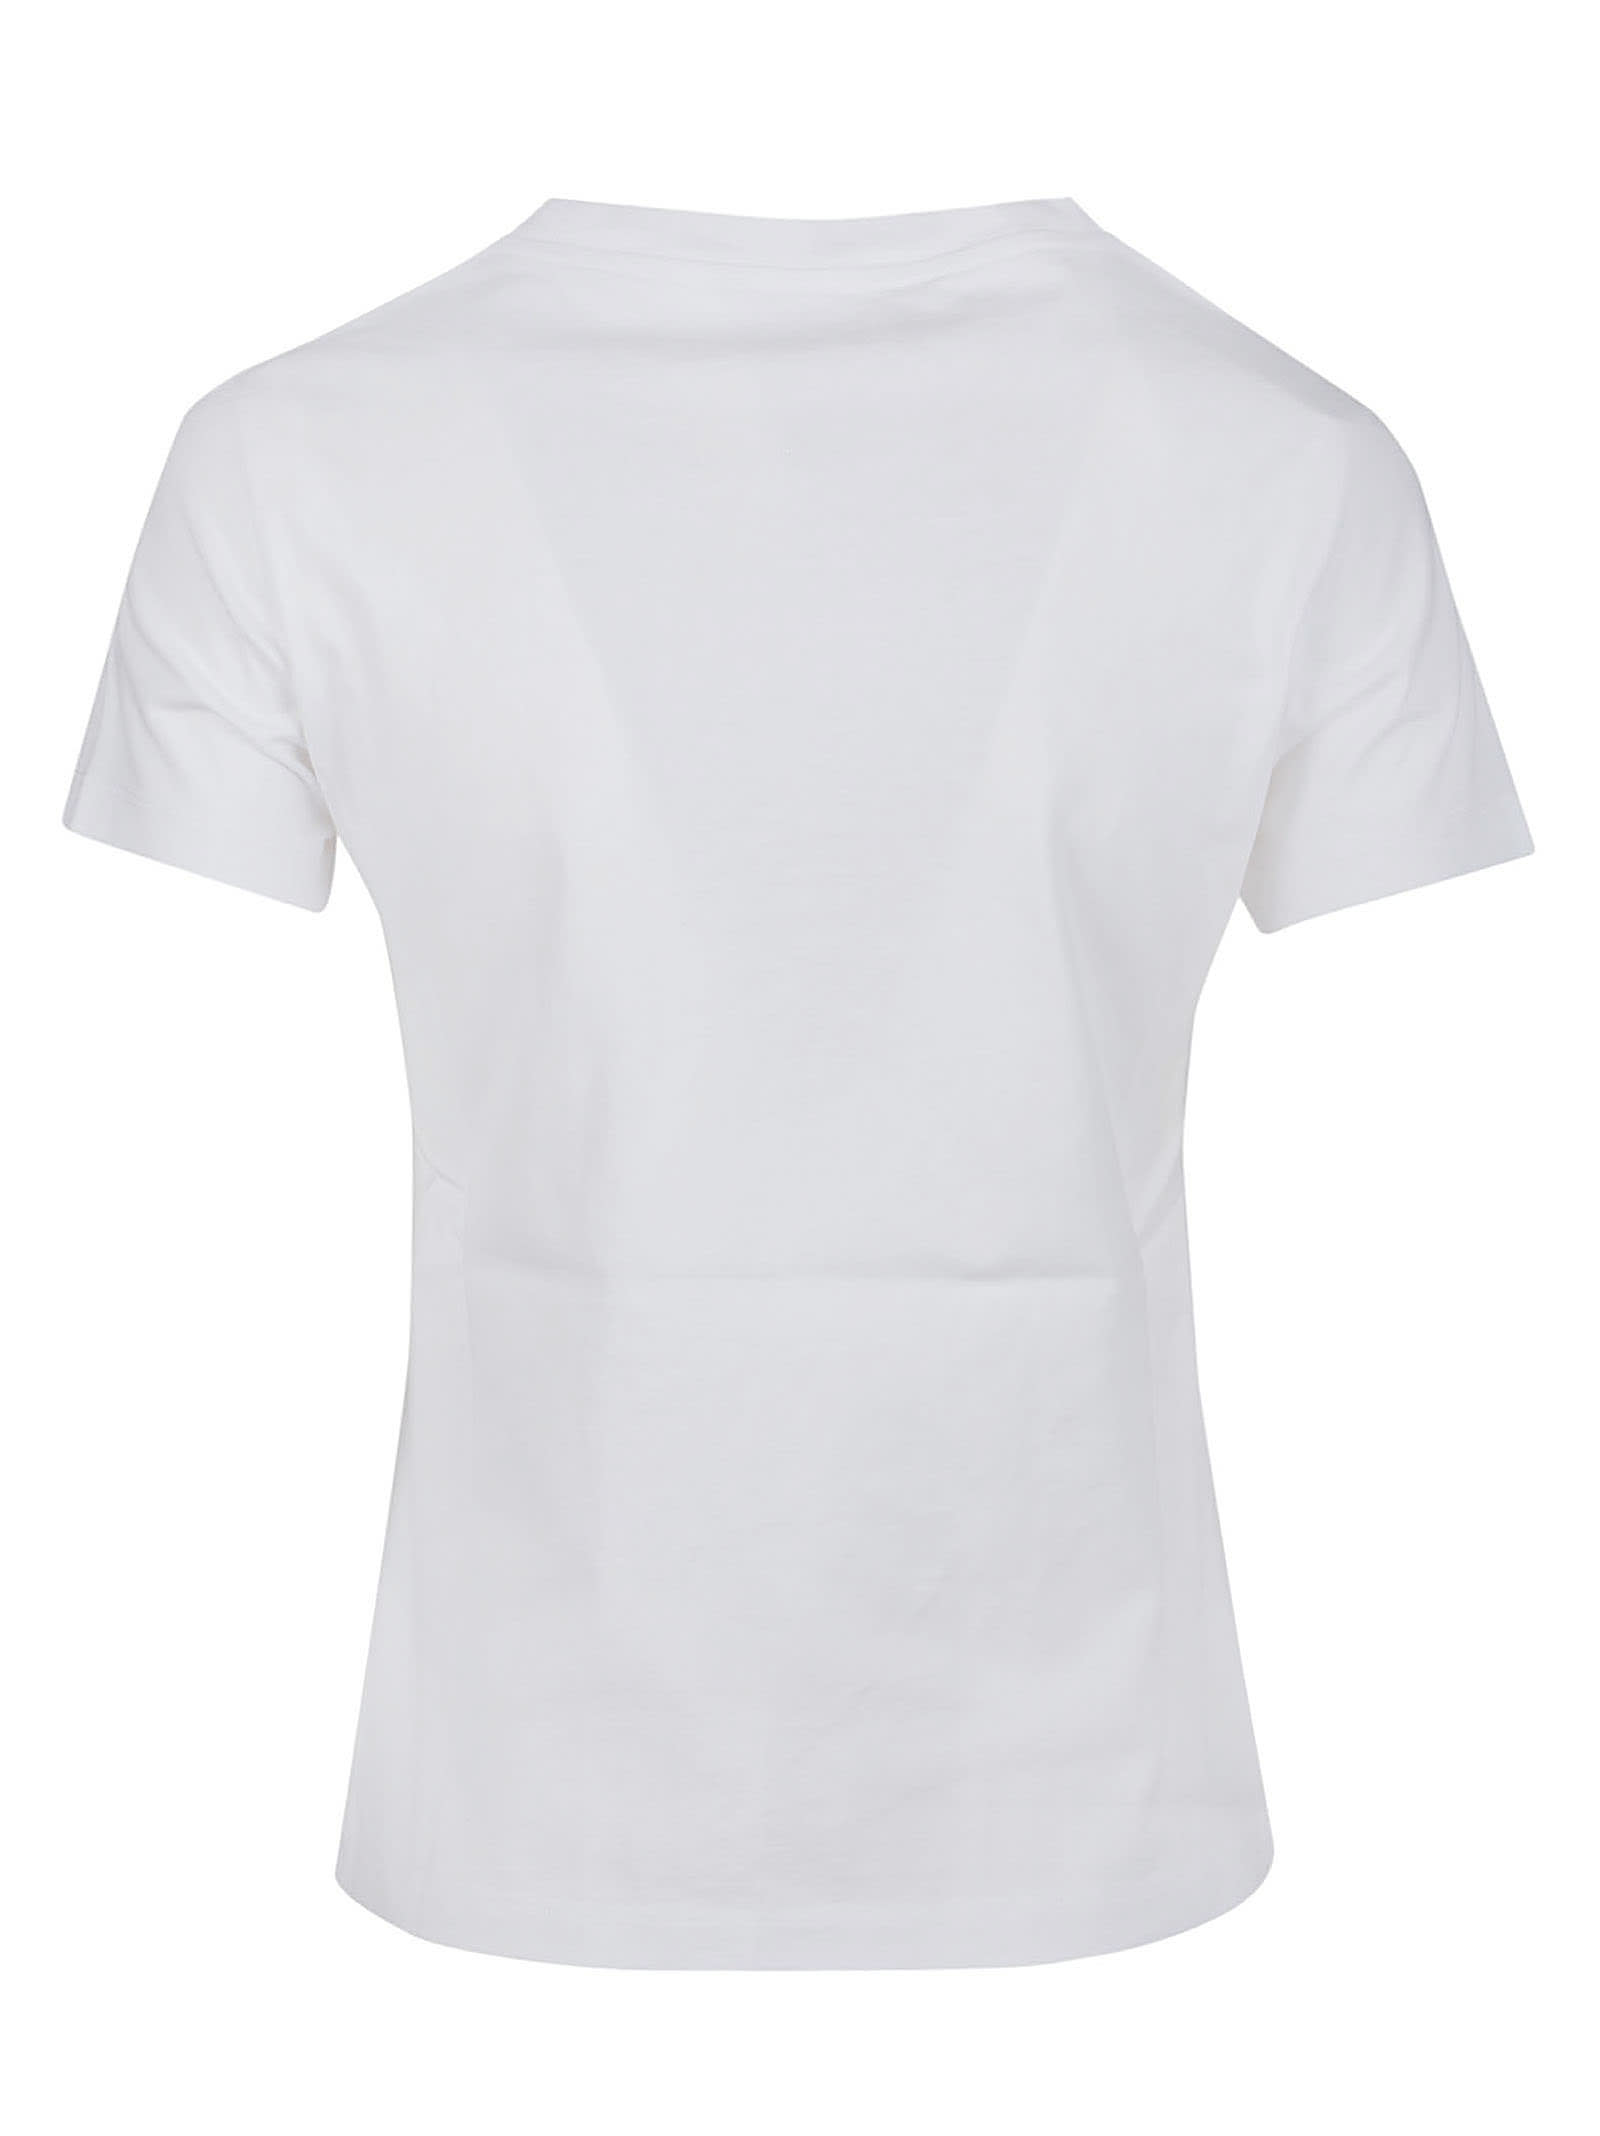 Shop Kenzo Boke Crest Classic T-shirt In Blanc